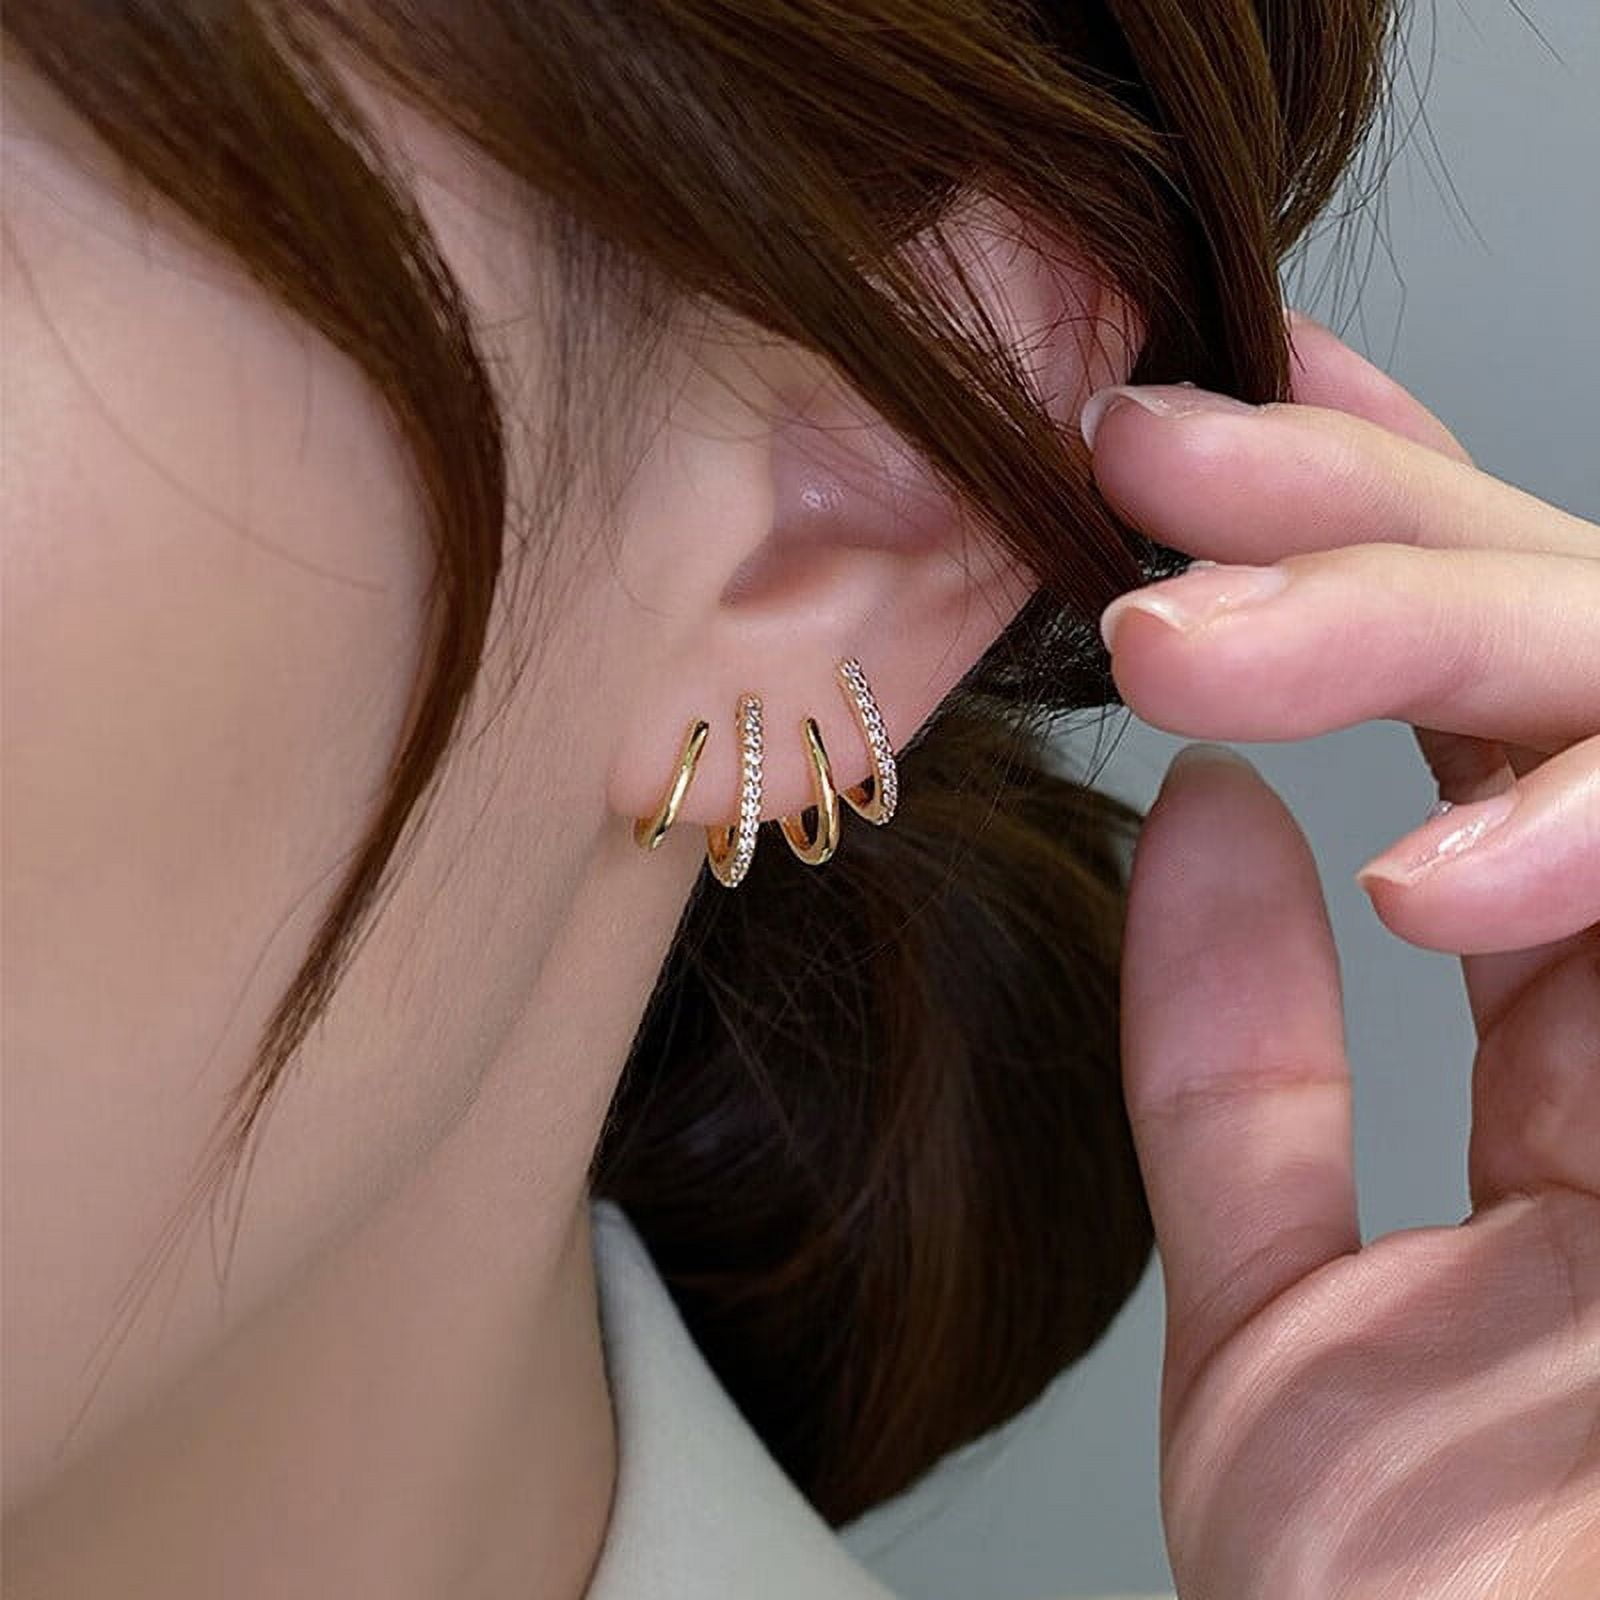 Ostrifin Earing Claw Ear Hook Clip Earrings Women Four Prong Setting Fashion Earrings 460e59c7 54b4 4e53 a5e5 1cd059c9fd3c.bc8c1fe4b38f8c89ee7da6633c13c7c5